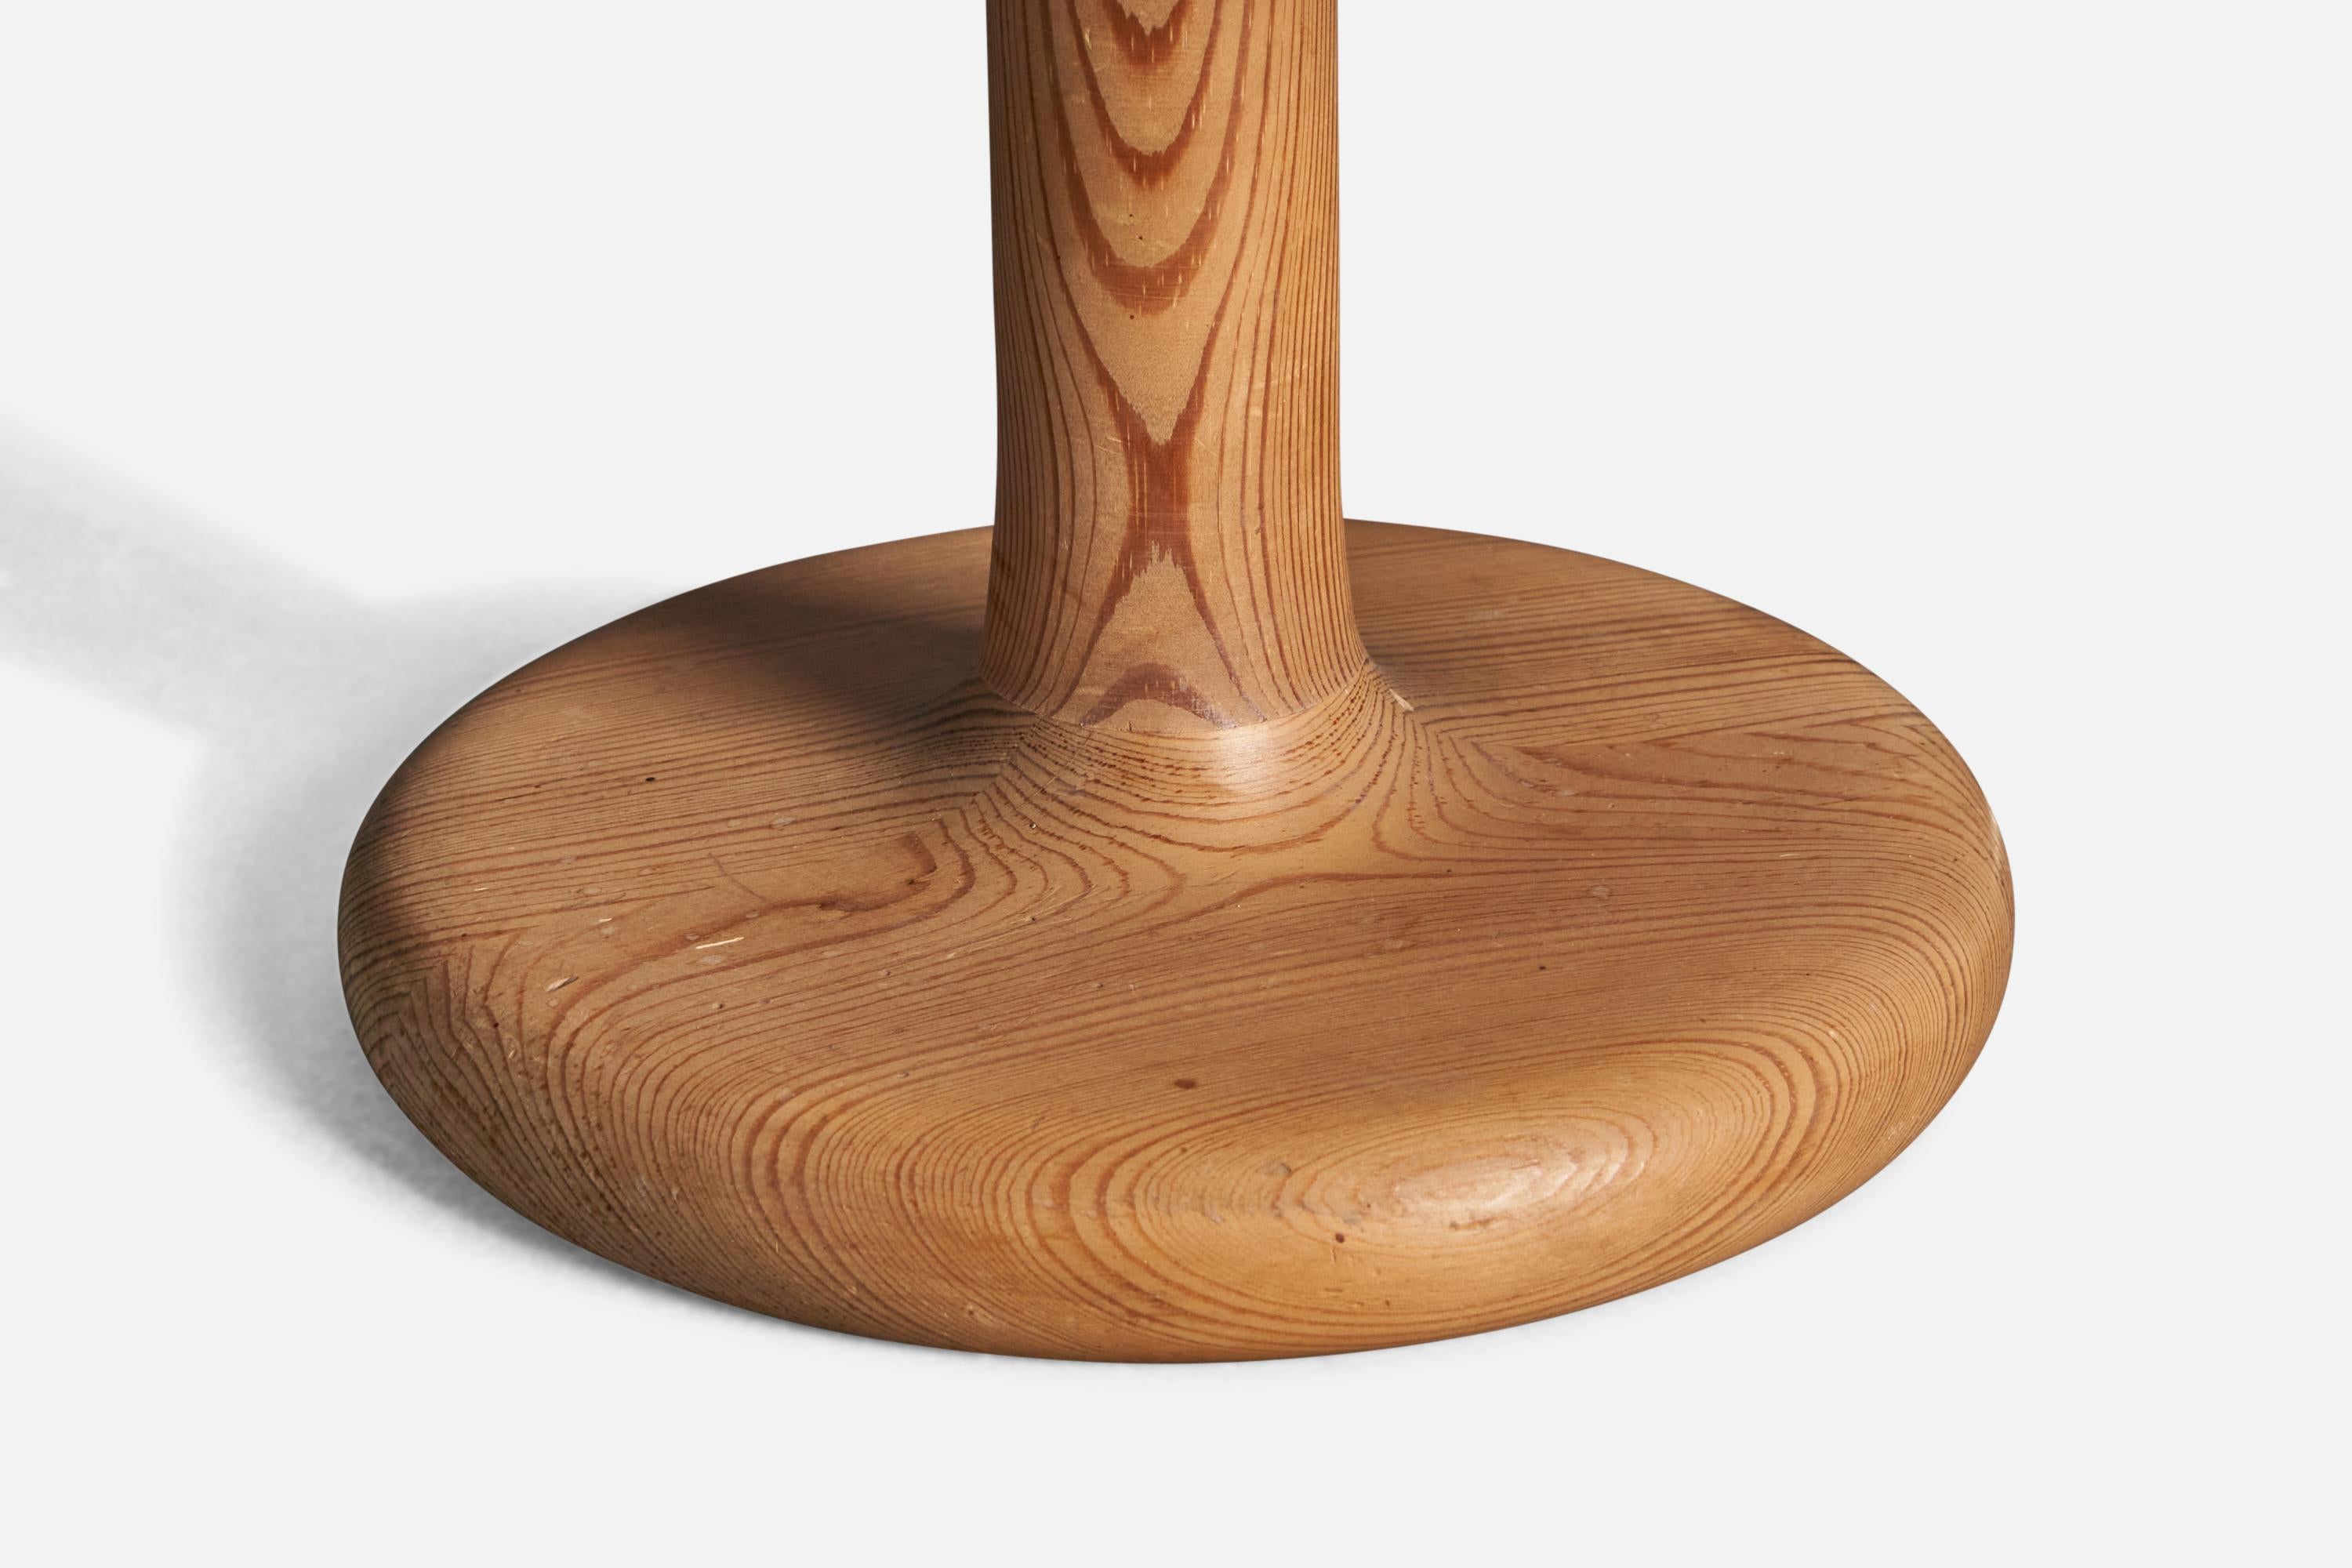 Une lampe de table conçue et produite par Aneta. En pin massif. Avec le label du fabricant.

Condit : Bon 
Usure conforme à l'âge et à l'utilisation.

Dimensions de la lampe (pouces) : 12